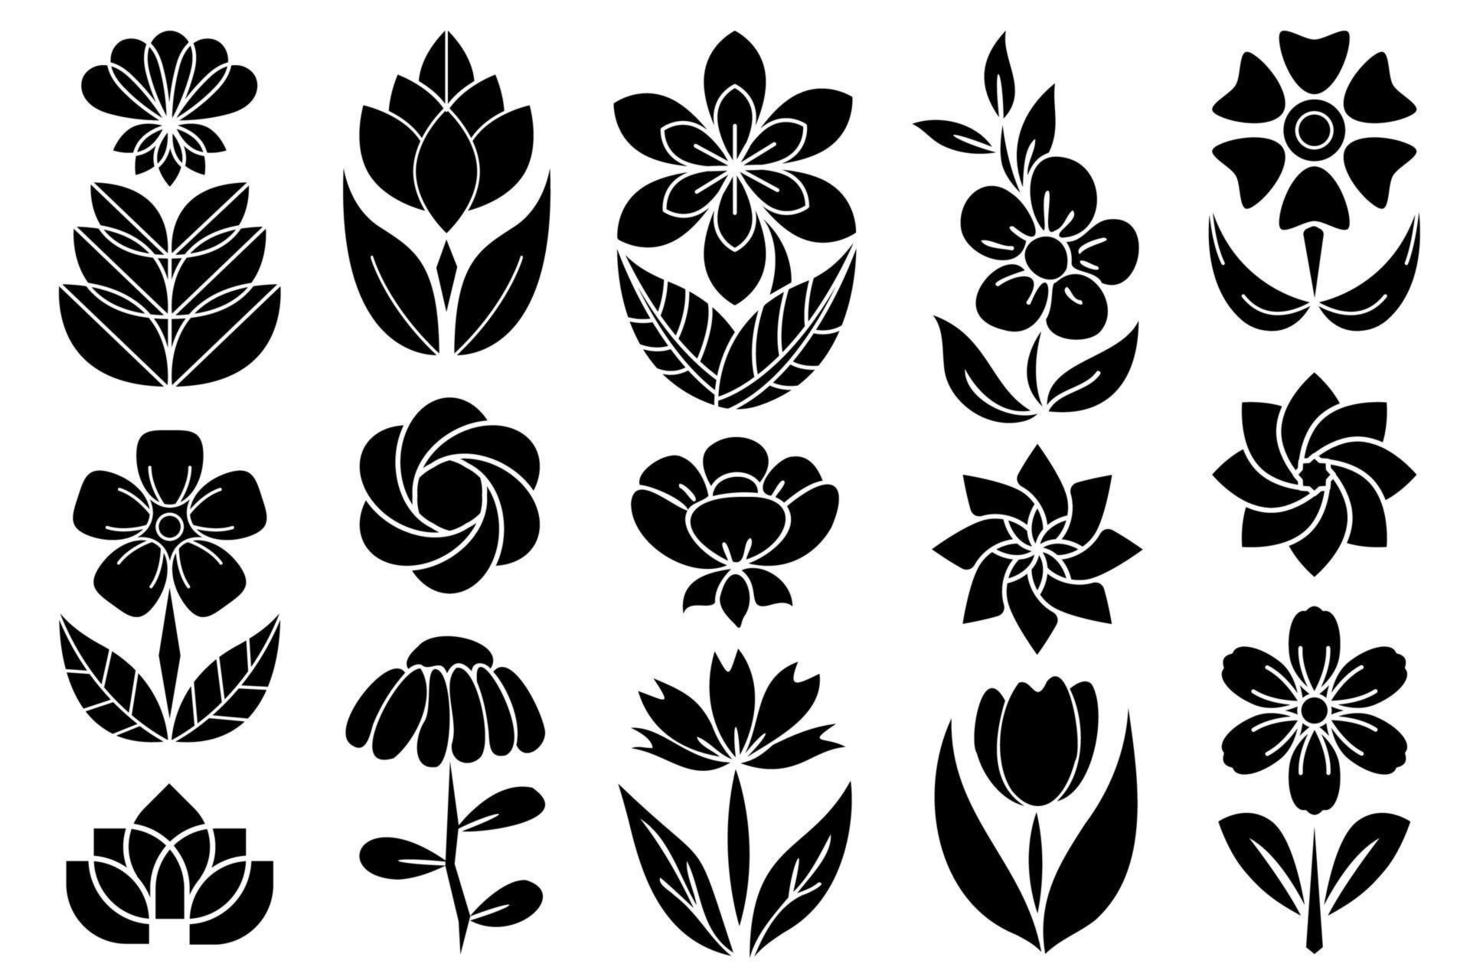 Blumen-Clipart-Sammlung. lasergeschnittene Vektorblumen zum Drucken und Schneiden von Dekorationen, Blumenset mit Blättern und Blütenblättern in schwarzer Form. vektor